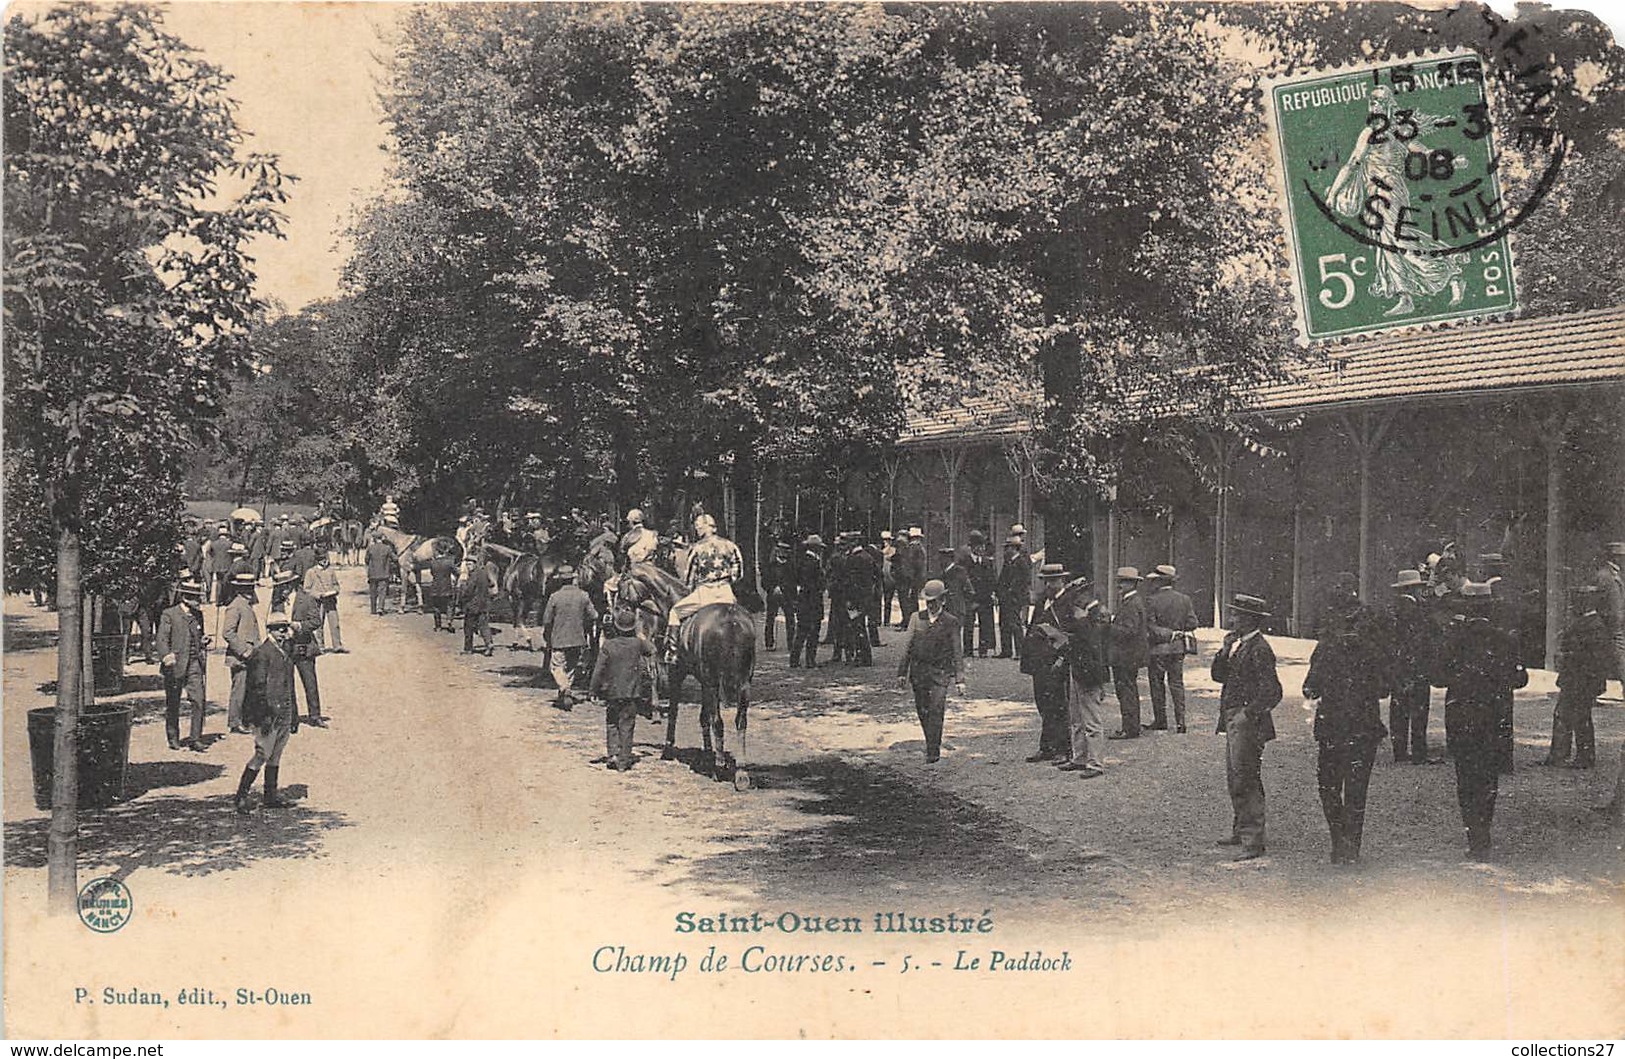 93-SAINT-OUEN- CHAMP DE COURSES , LE PADDOCK - Saint Ouen